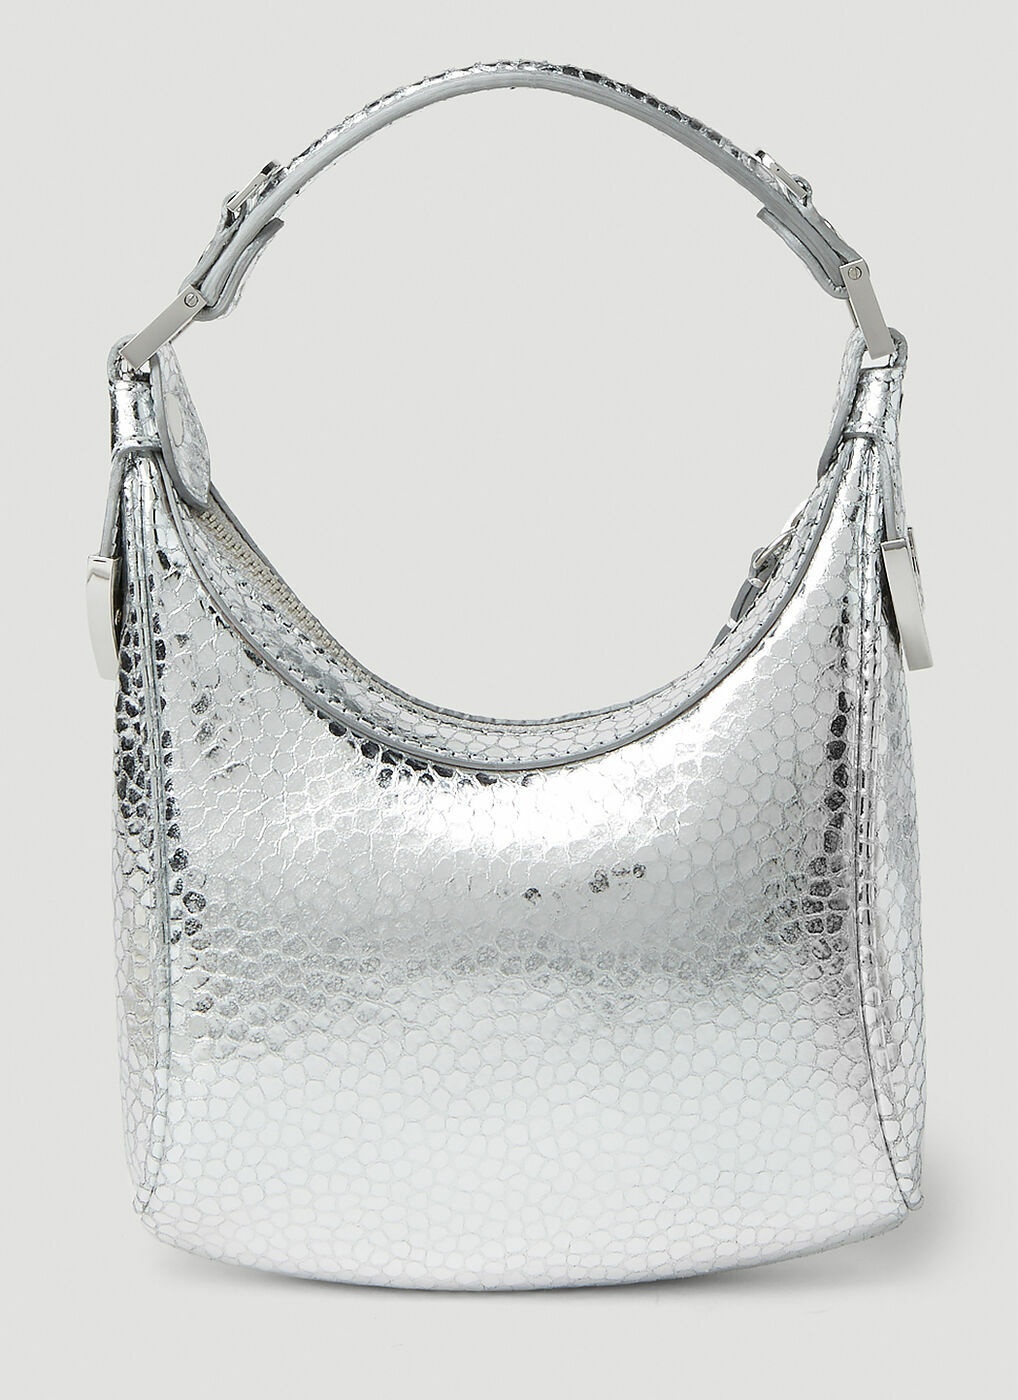 Cosmo Handbag in Silver By Far